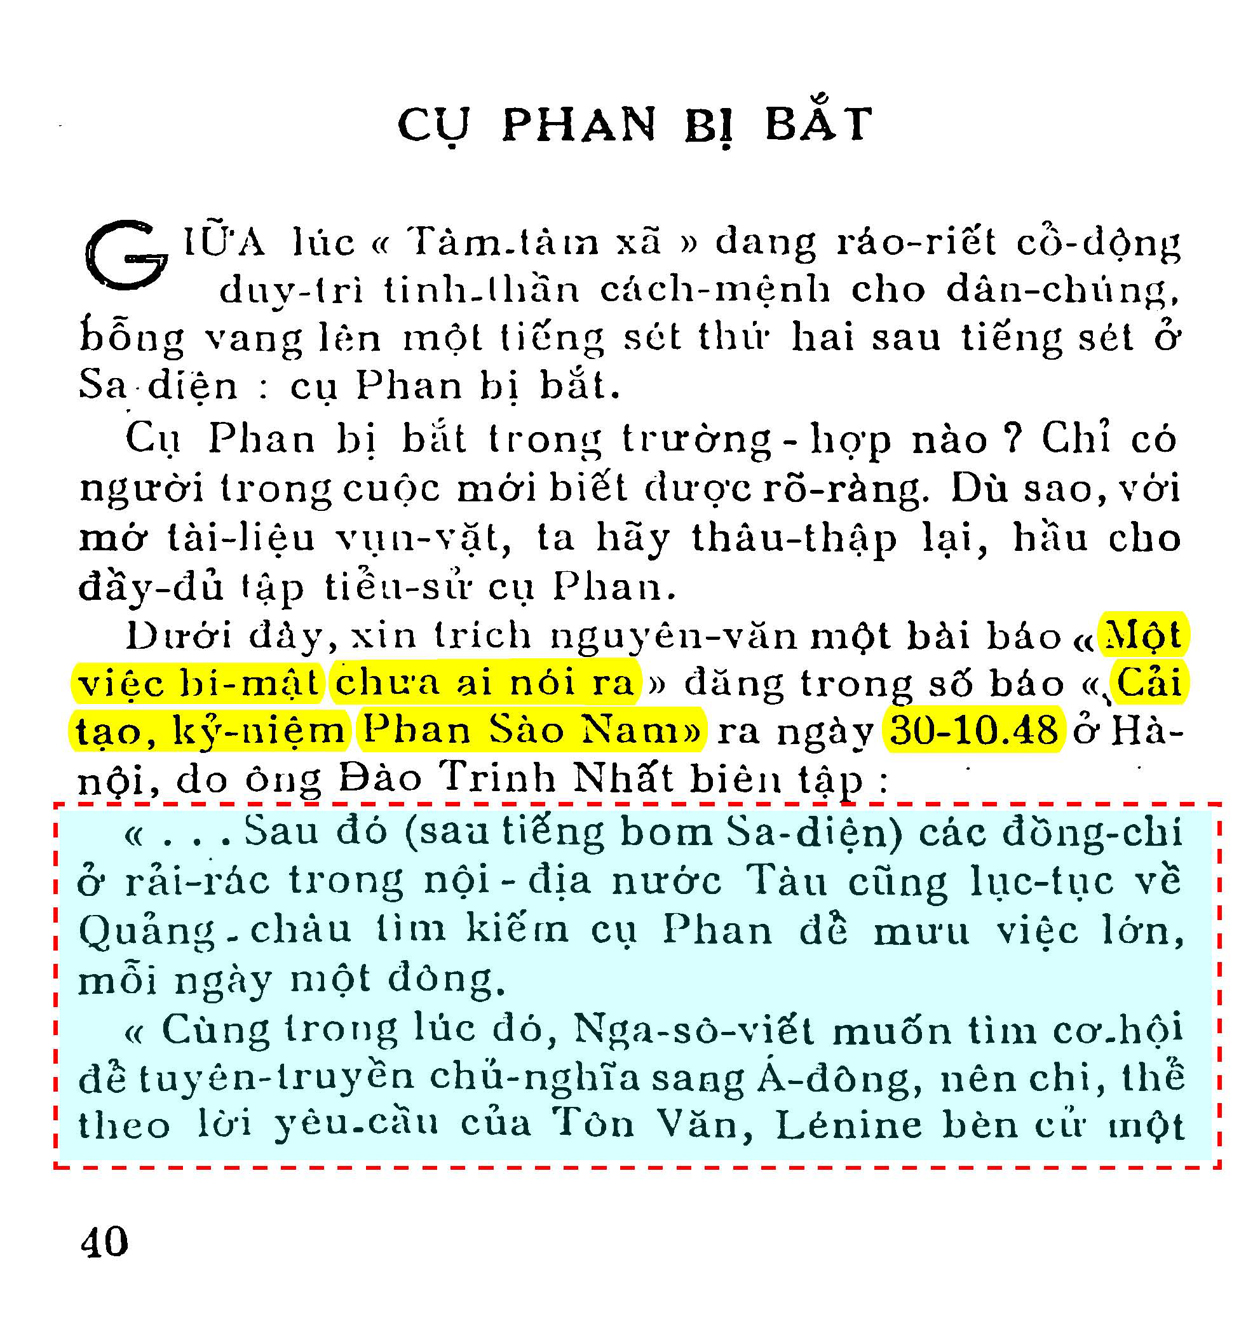 Trang 40 Phan Bội Chau - Thế Nguyên.jpg